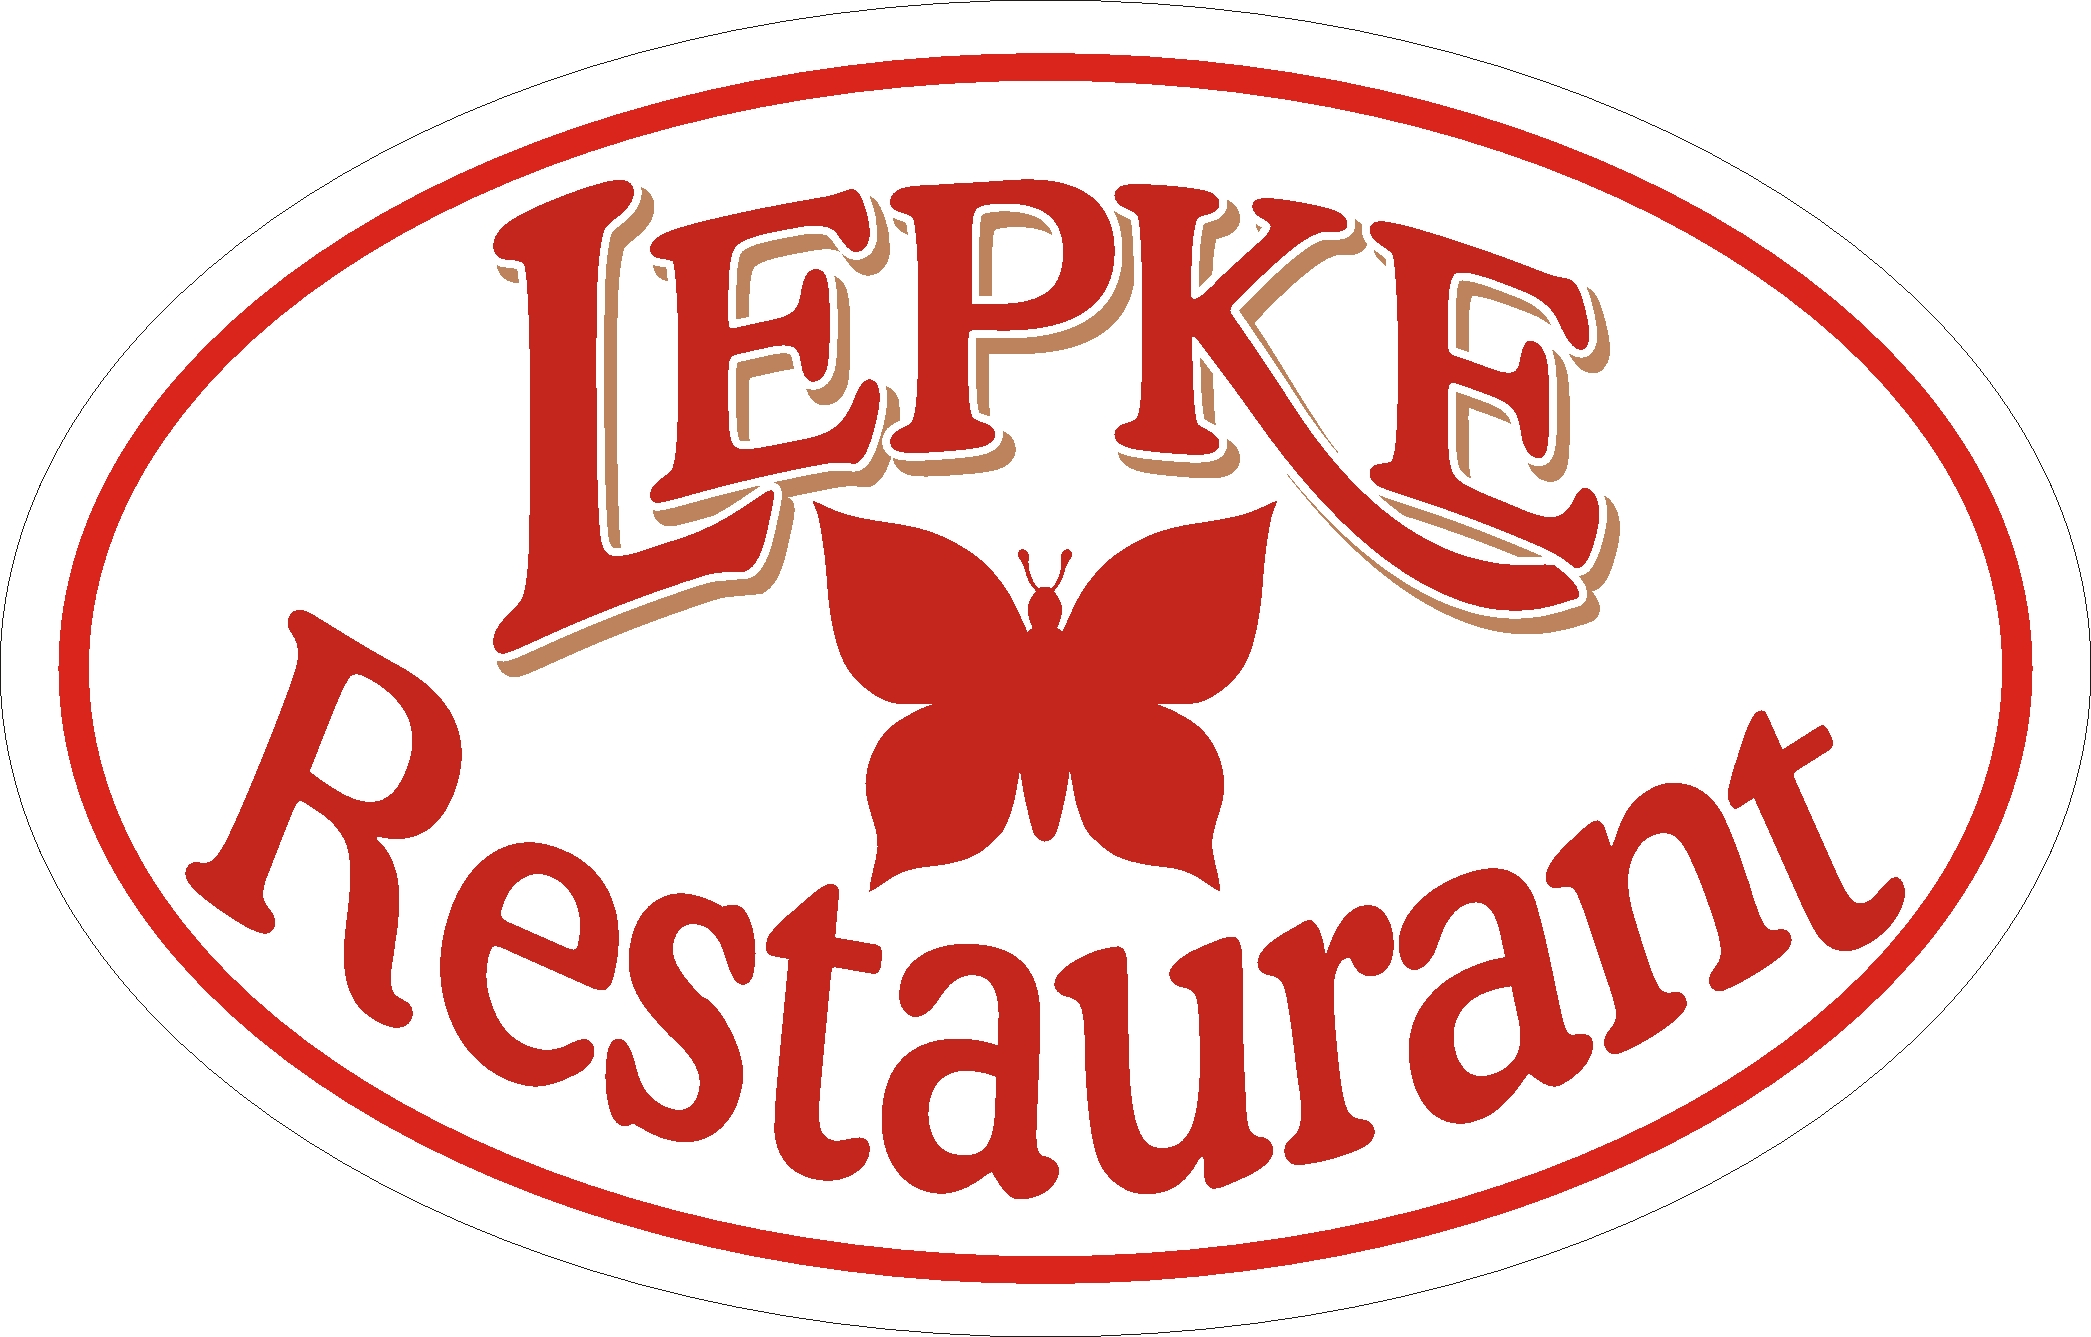 lepke restaurant